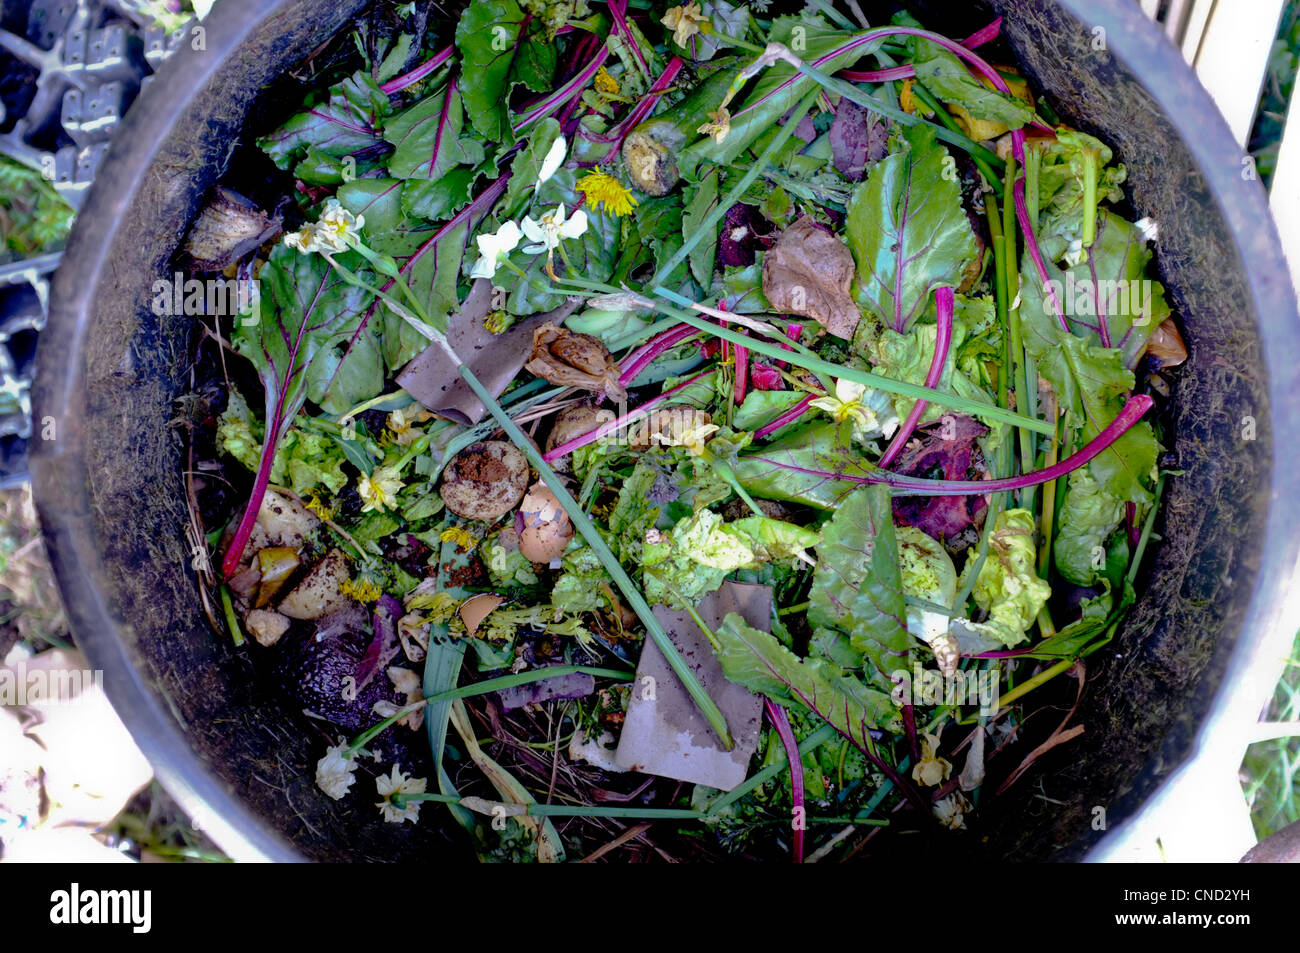 Eine Draufsicht auf einen Kompost mit Gemüse und anderen Küche Abfall Stockfoto